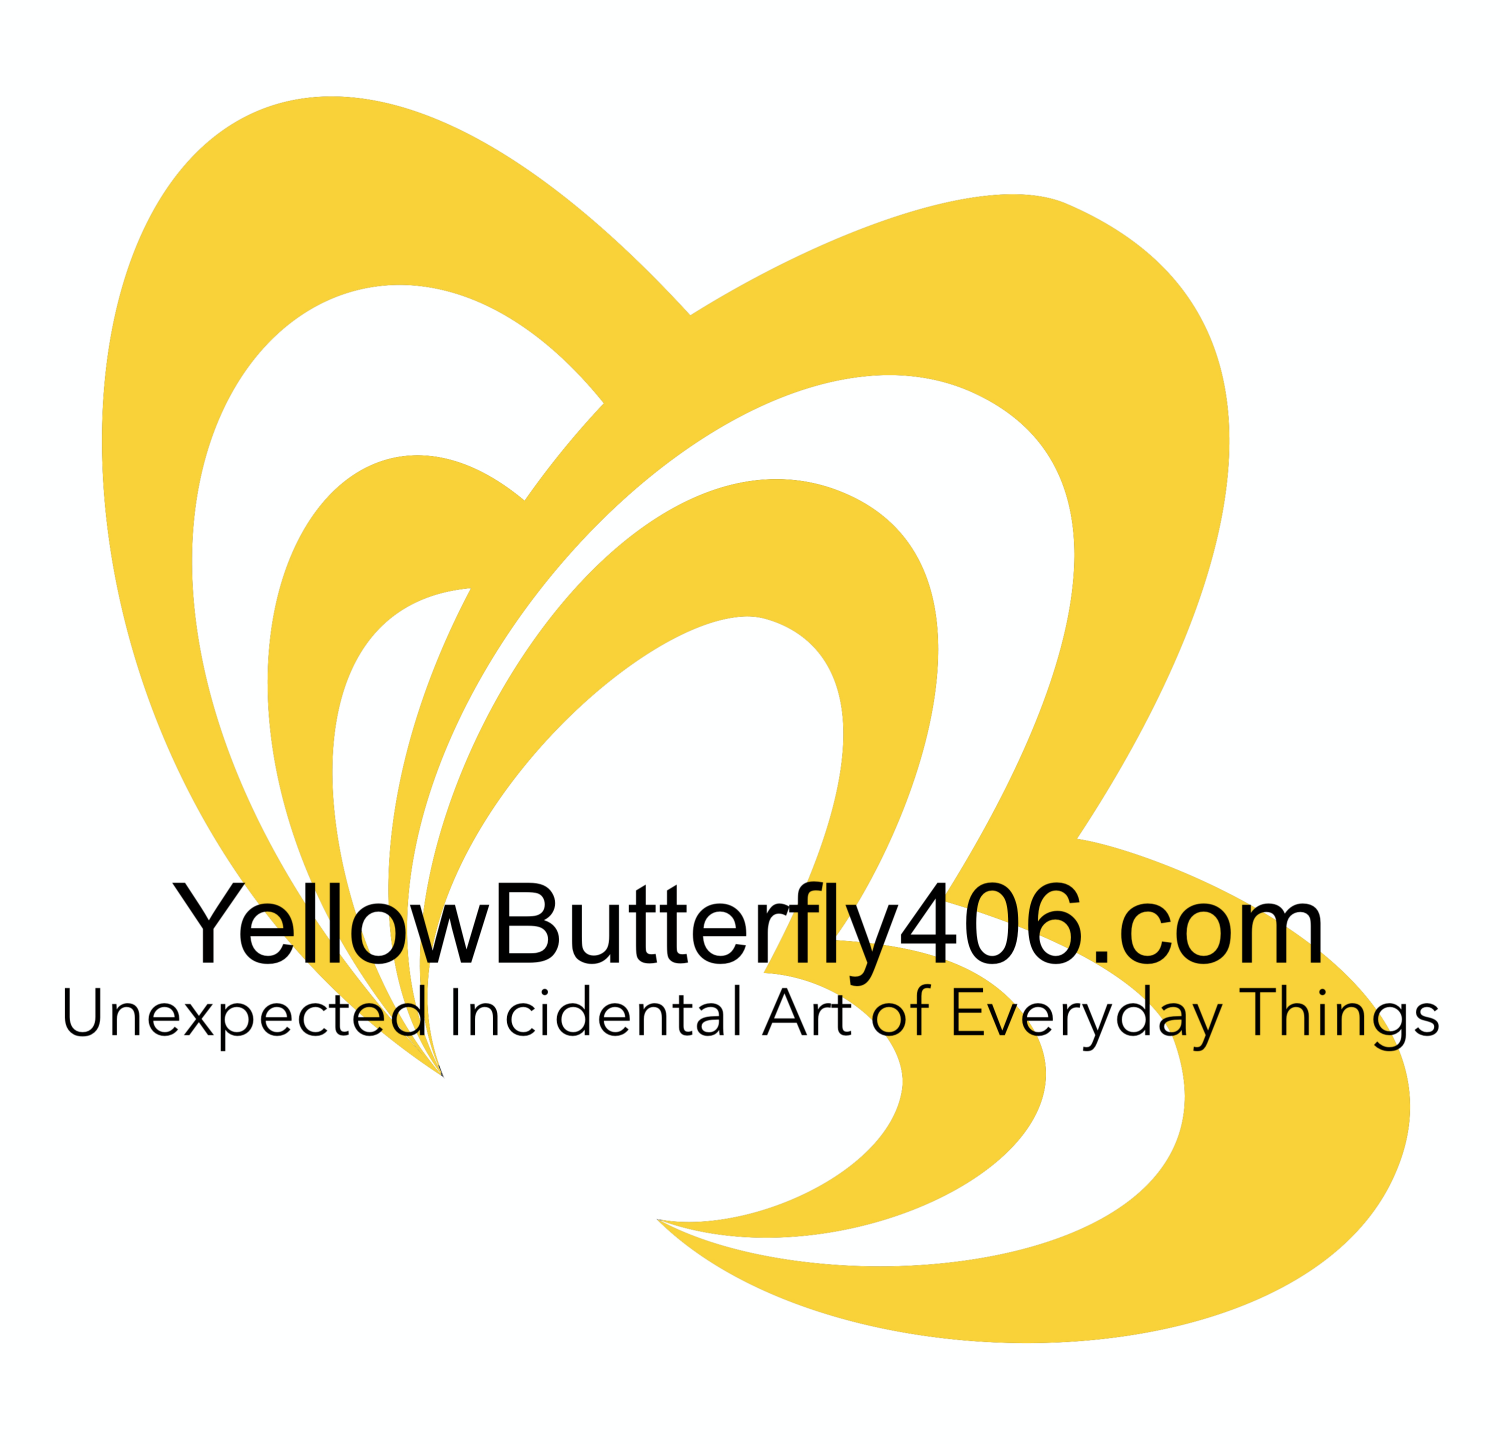 yellowbutterfly406